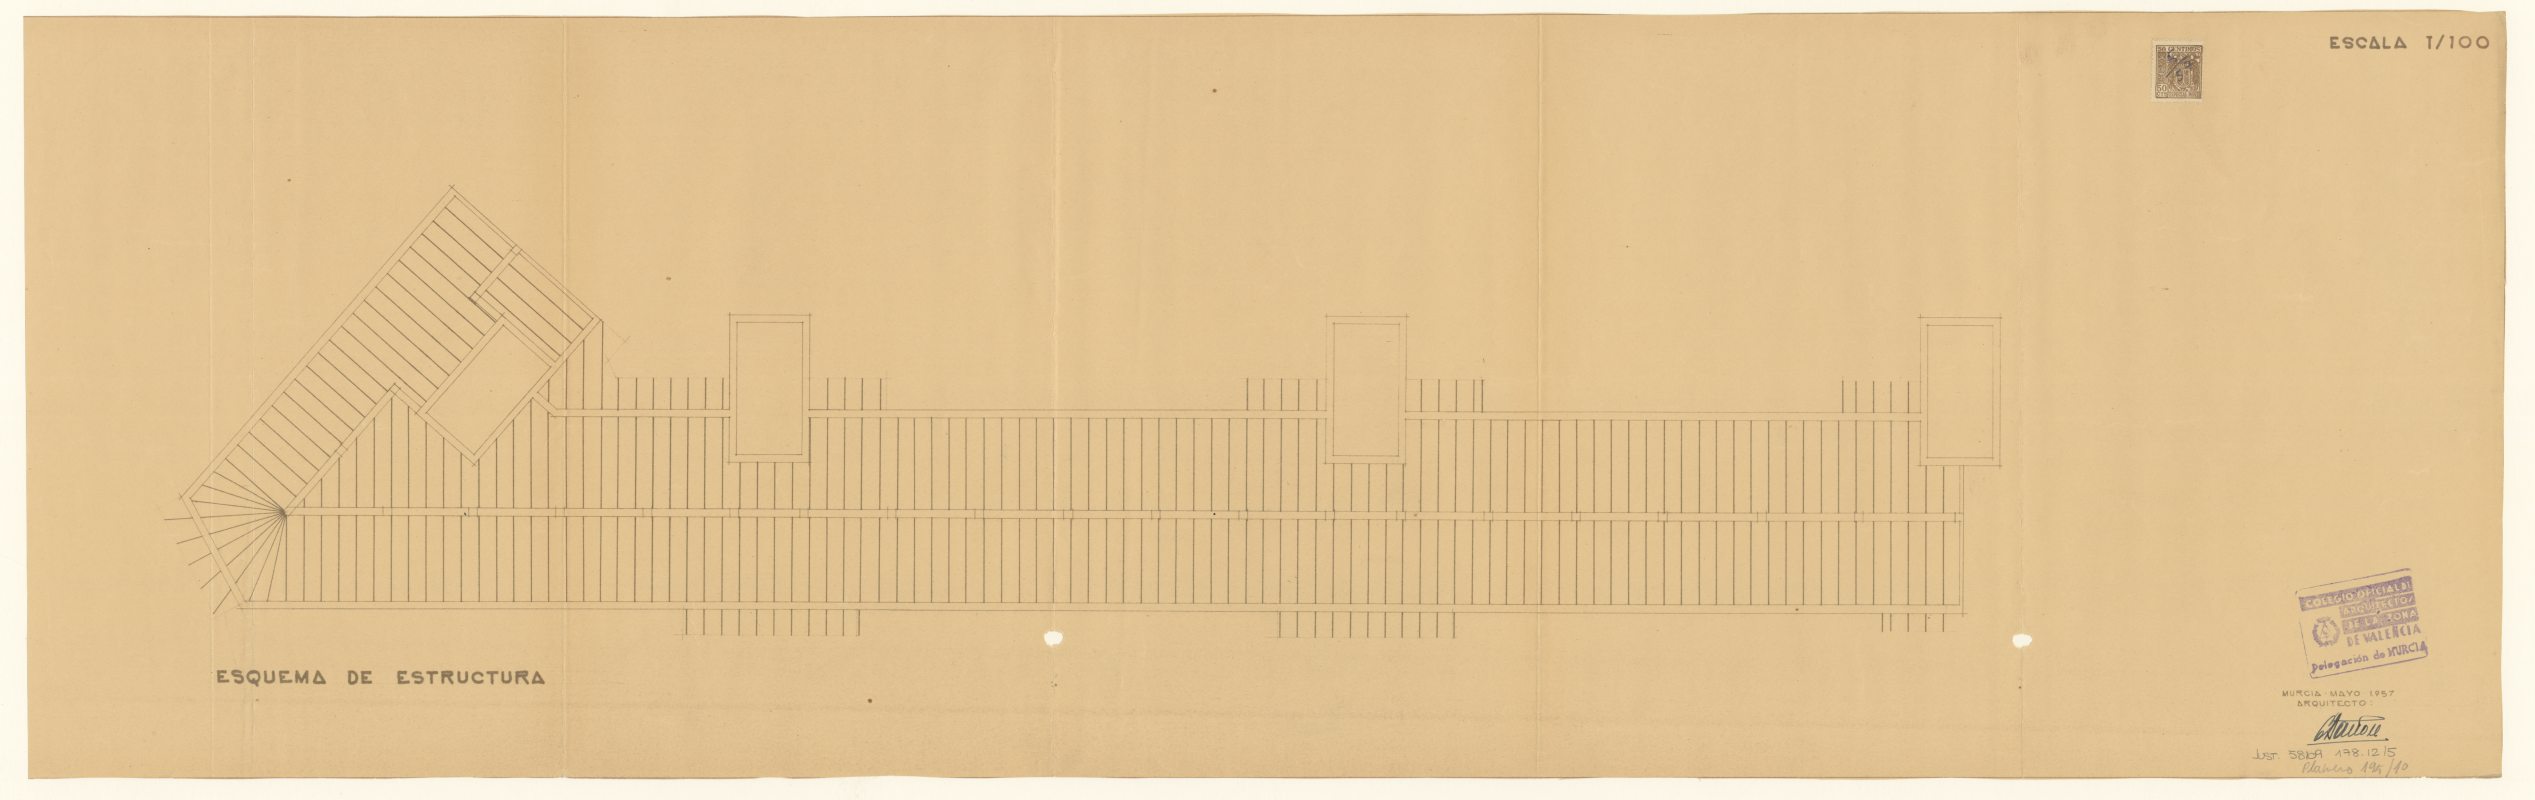 Plano de esquema de estructuras de edificio de viviendas de Gran Vía en Caravaca de la Cruz. Arquitecto Eugenio Bañón. Escala 1:100. Año 1957.